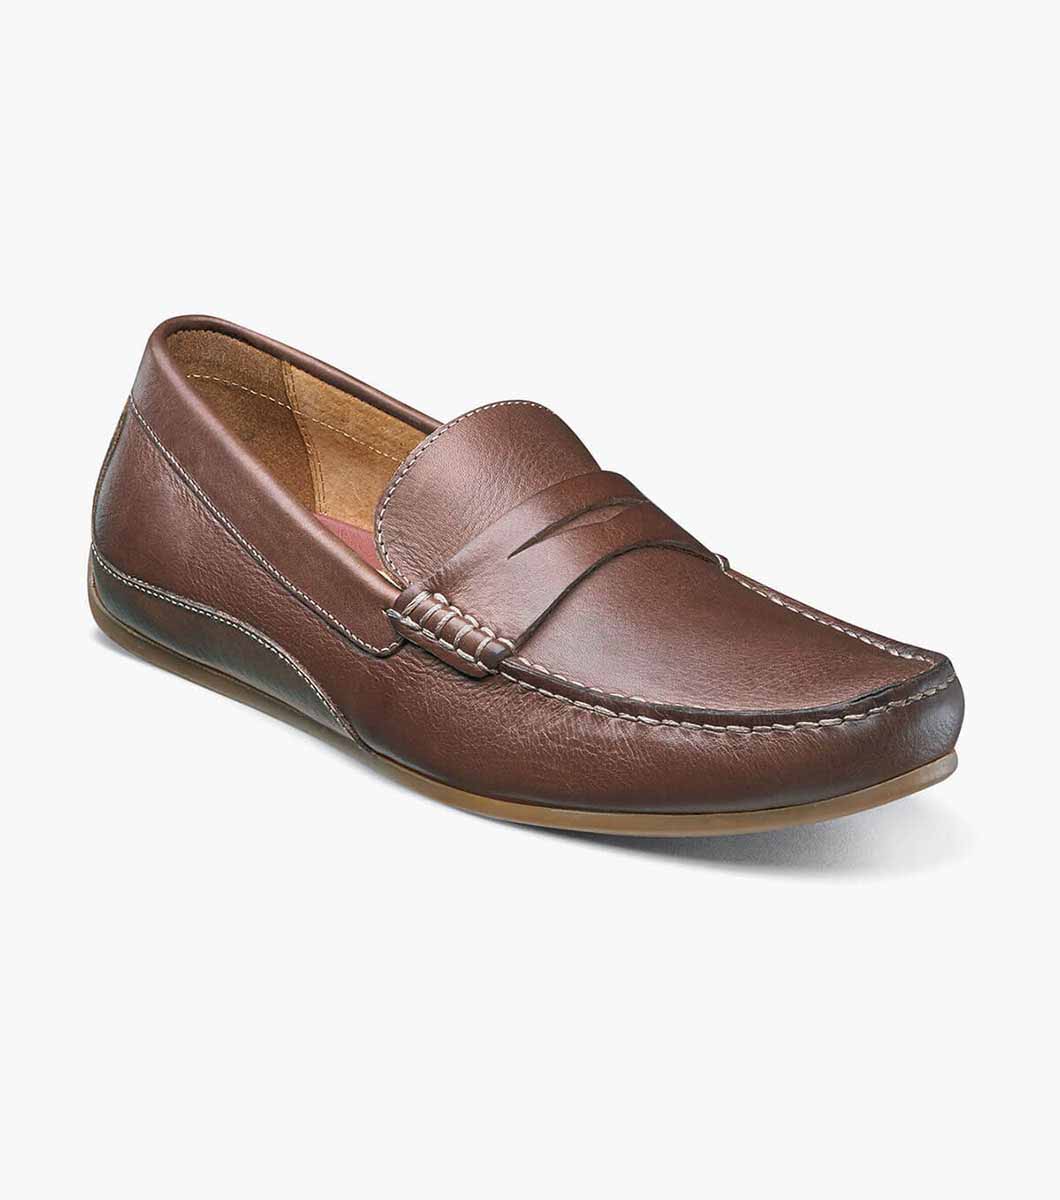 Men’s Casual Shoes | Cognac Moc Toe Penny Driver | Florsheim Oval